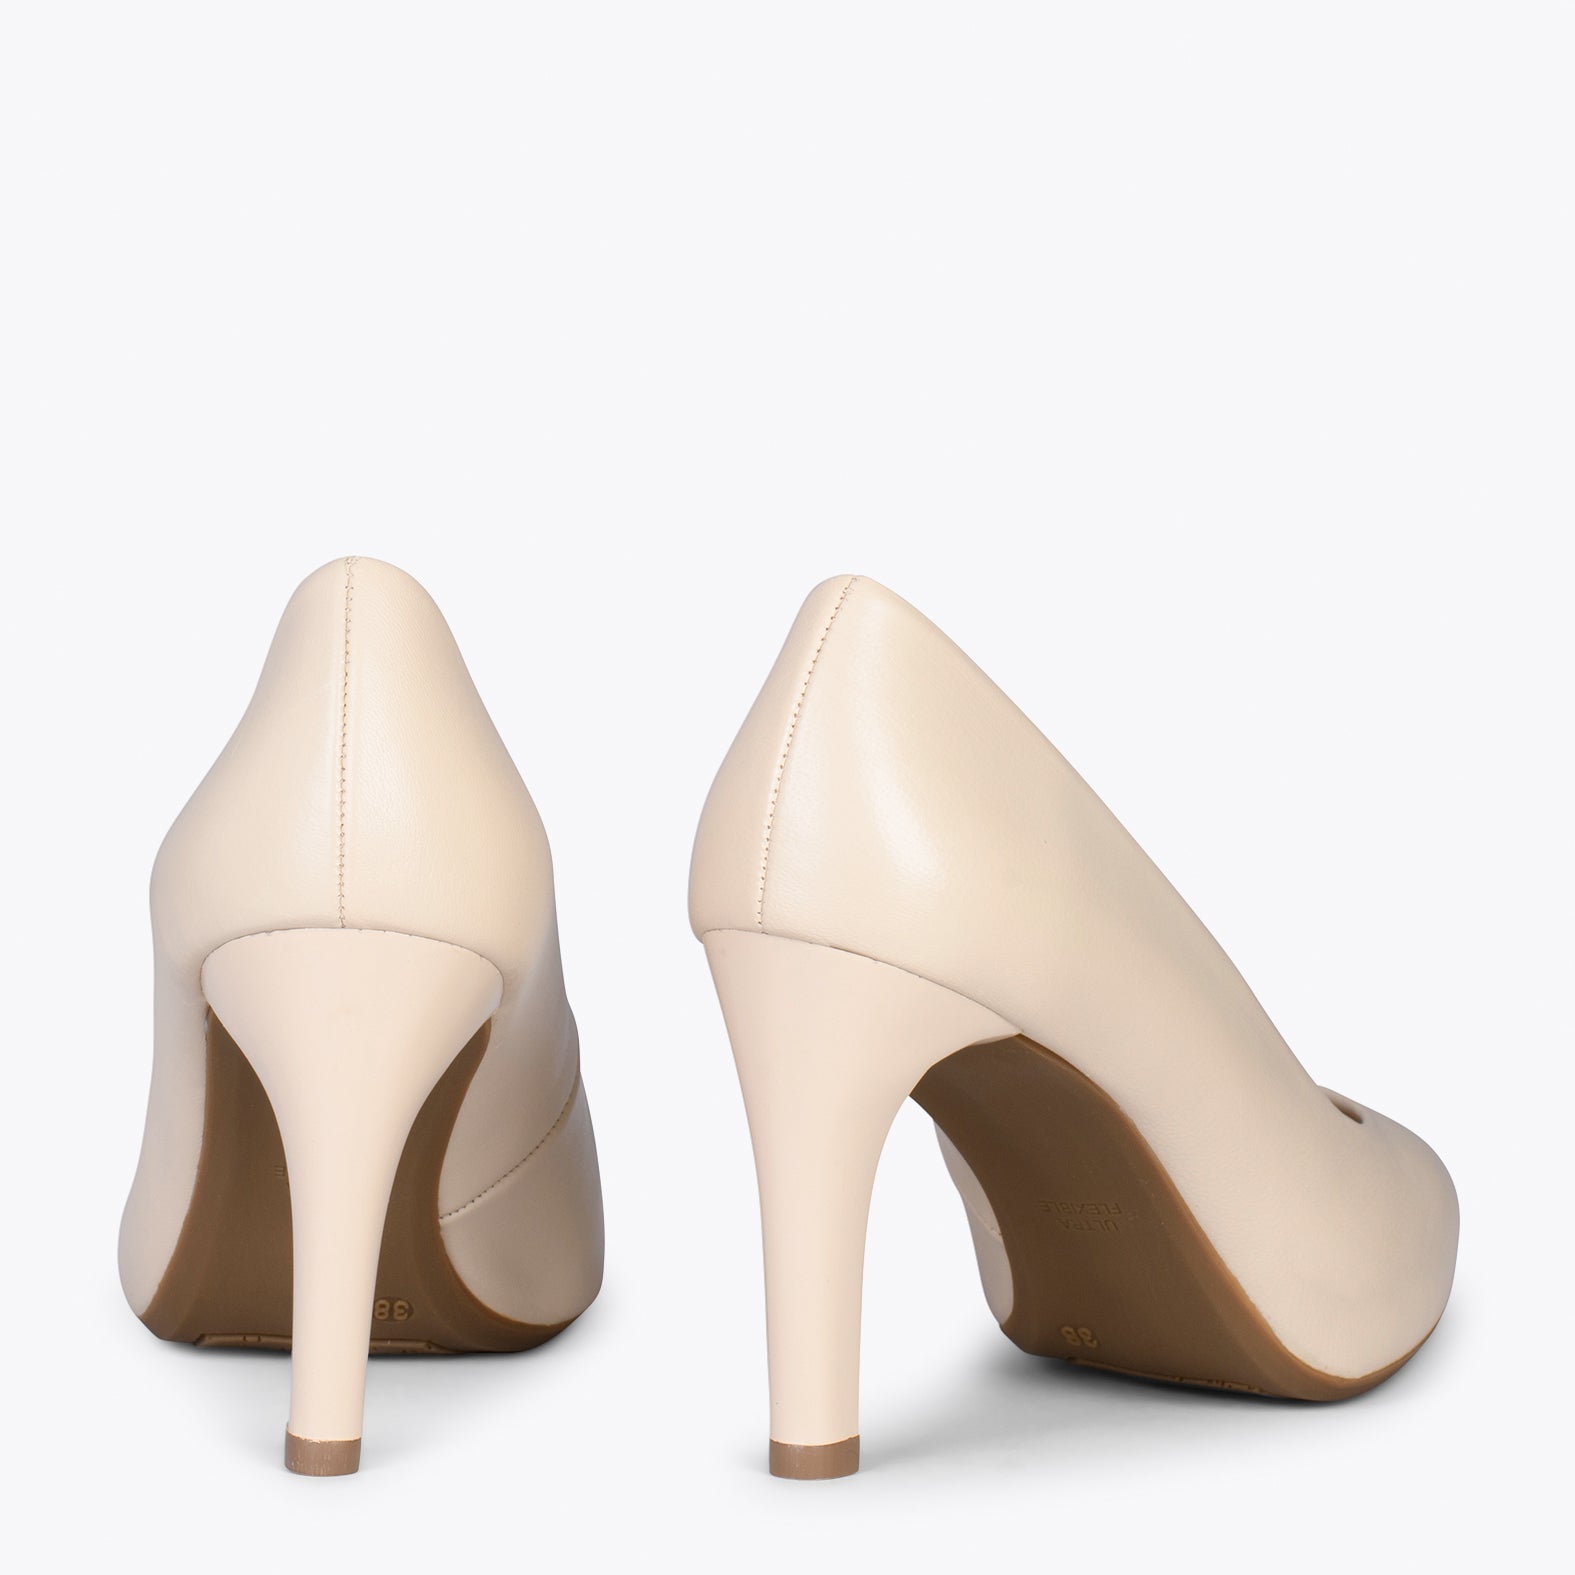 GLAM – BEIGE elegant high heels